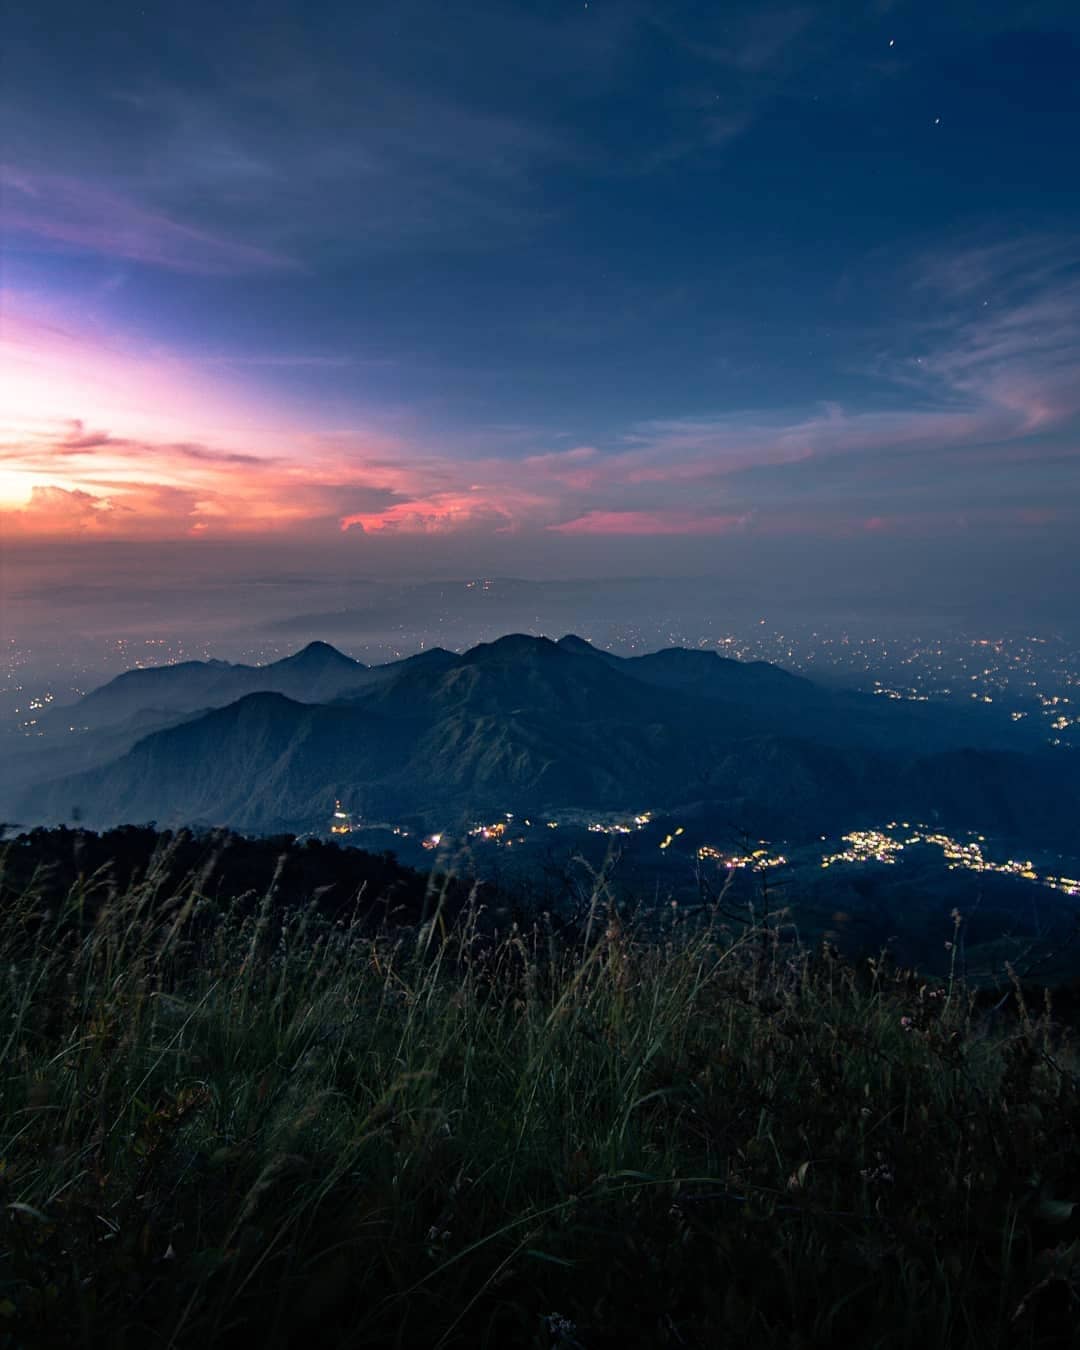 Daftar Nama Gunung Yang Terkenal Angker Di Indonesia